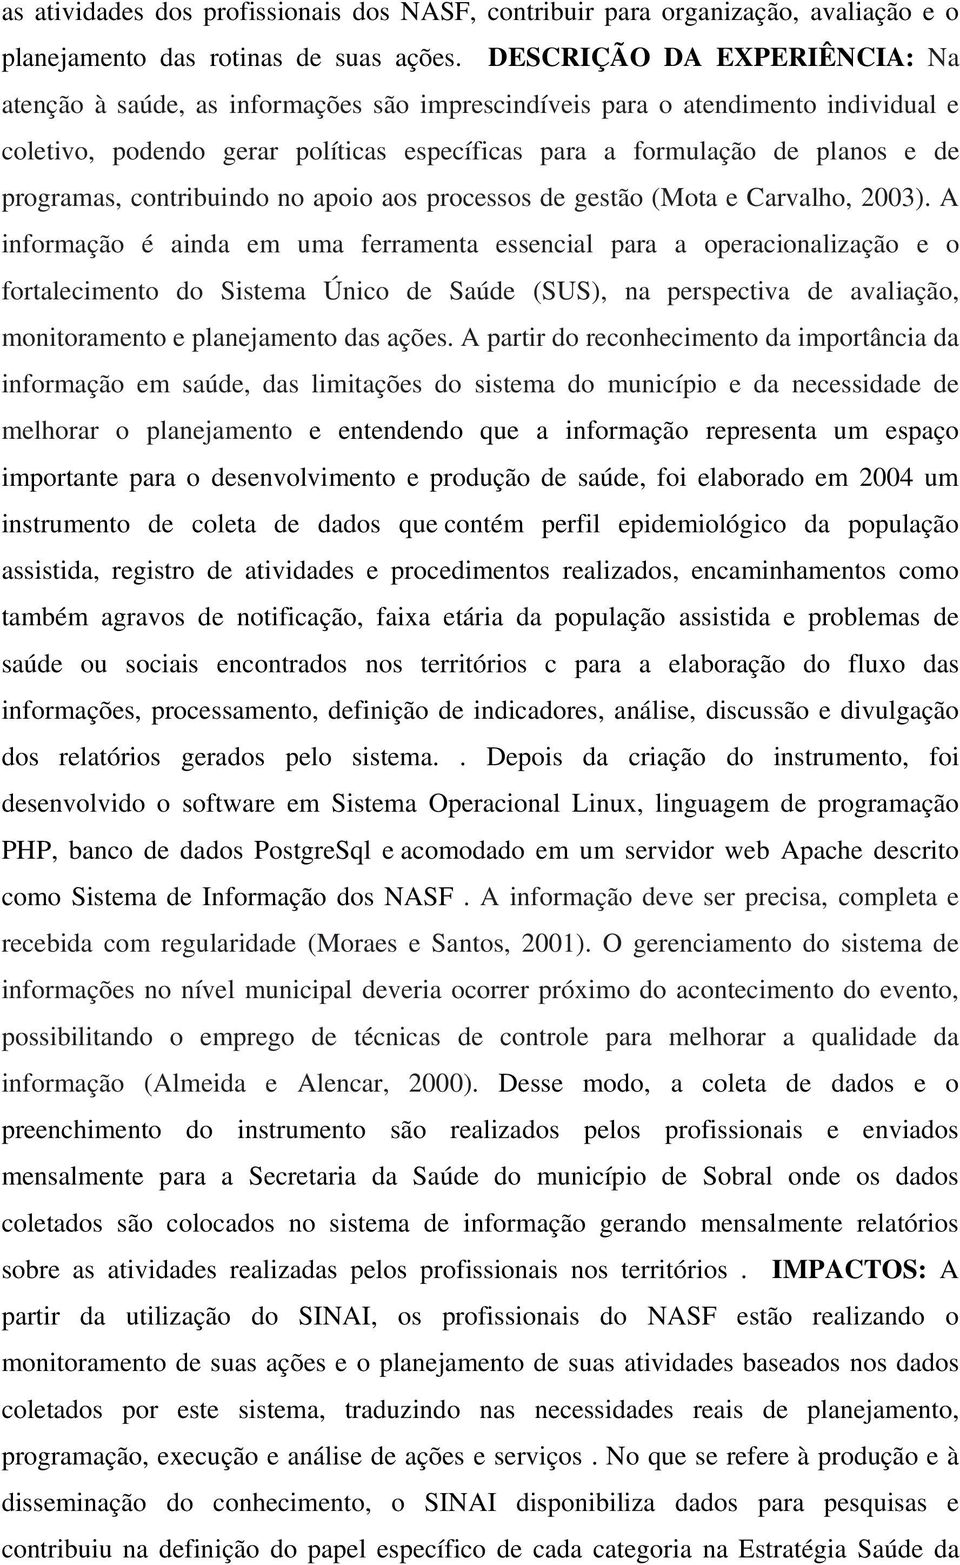 programas, contribuindo no apoio aos processos de gestão (Mota e Carvalho, 2003).